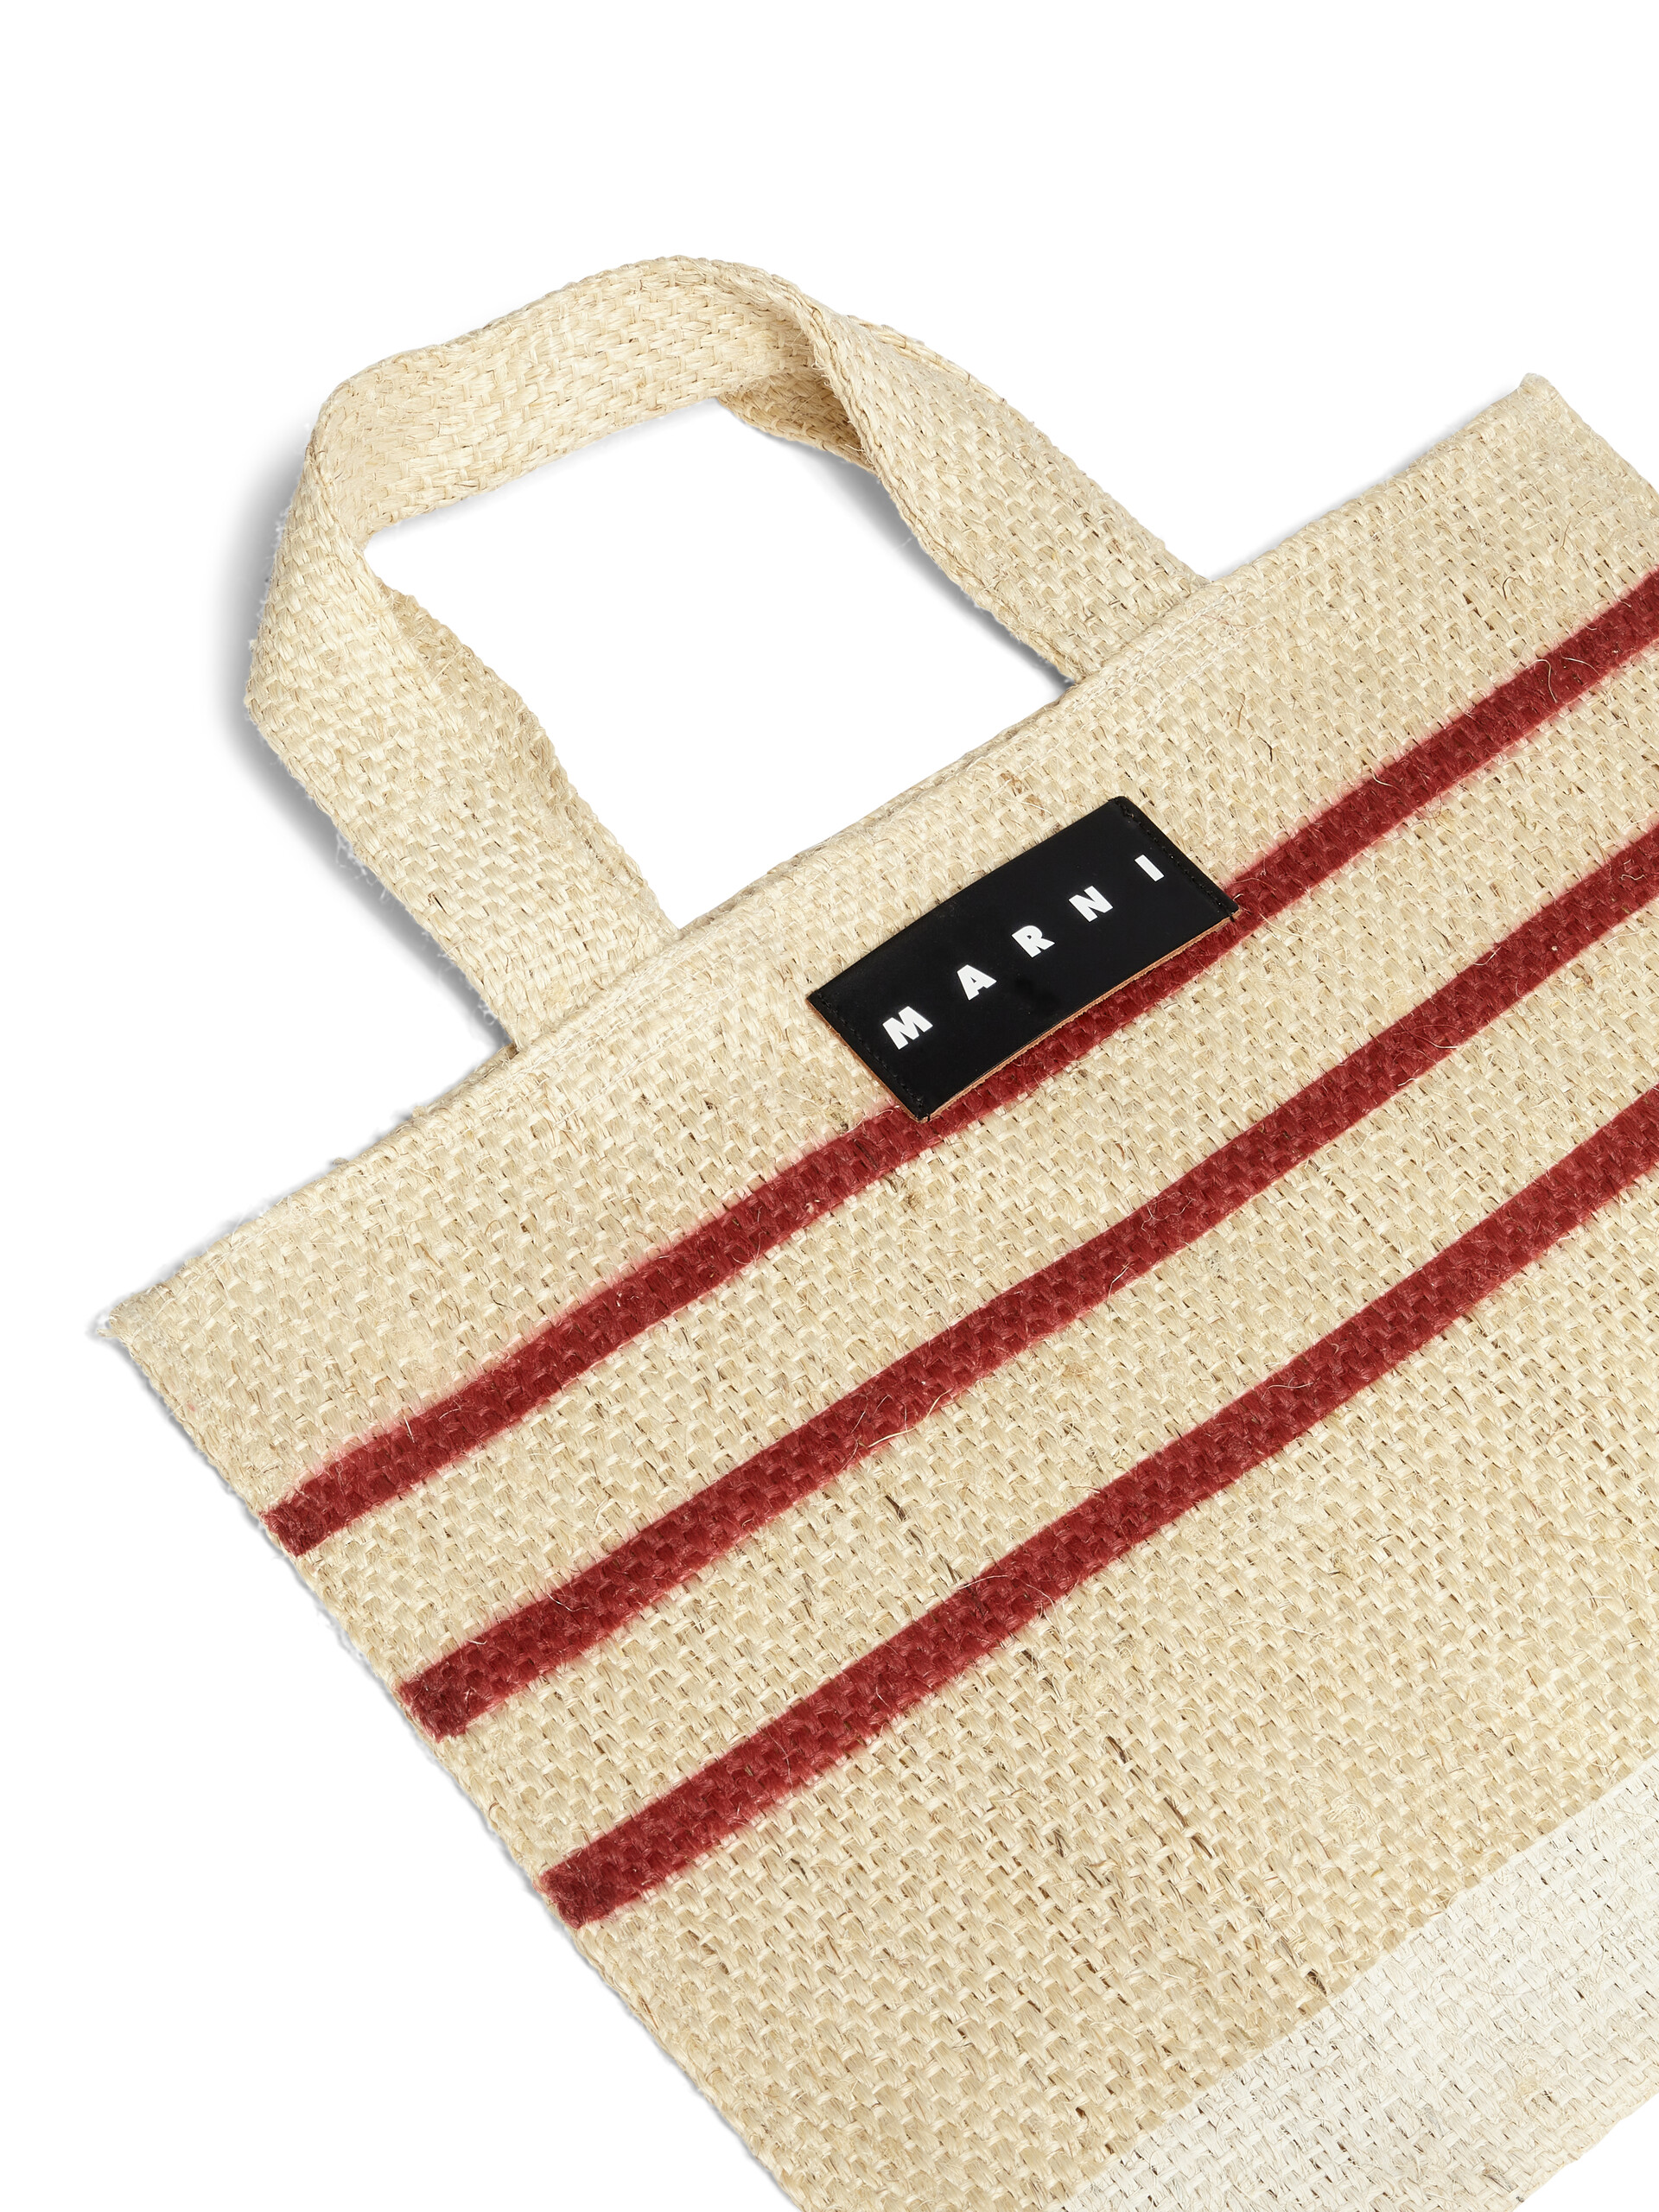 MARNI MARKET CANAPA small bag in black and orange natural fiber - Shopping Bags - Image 4